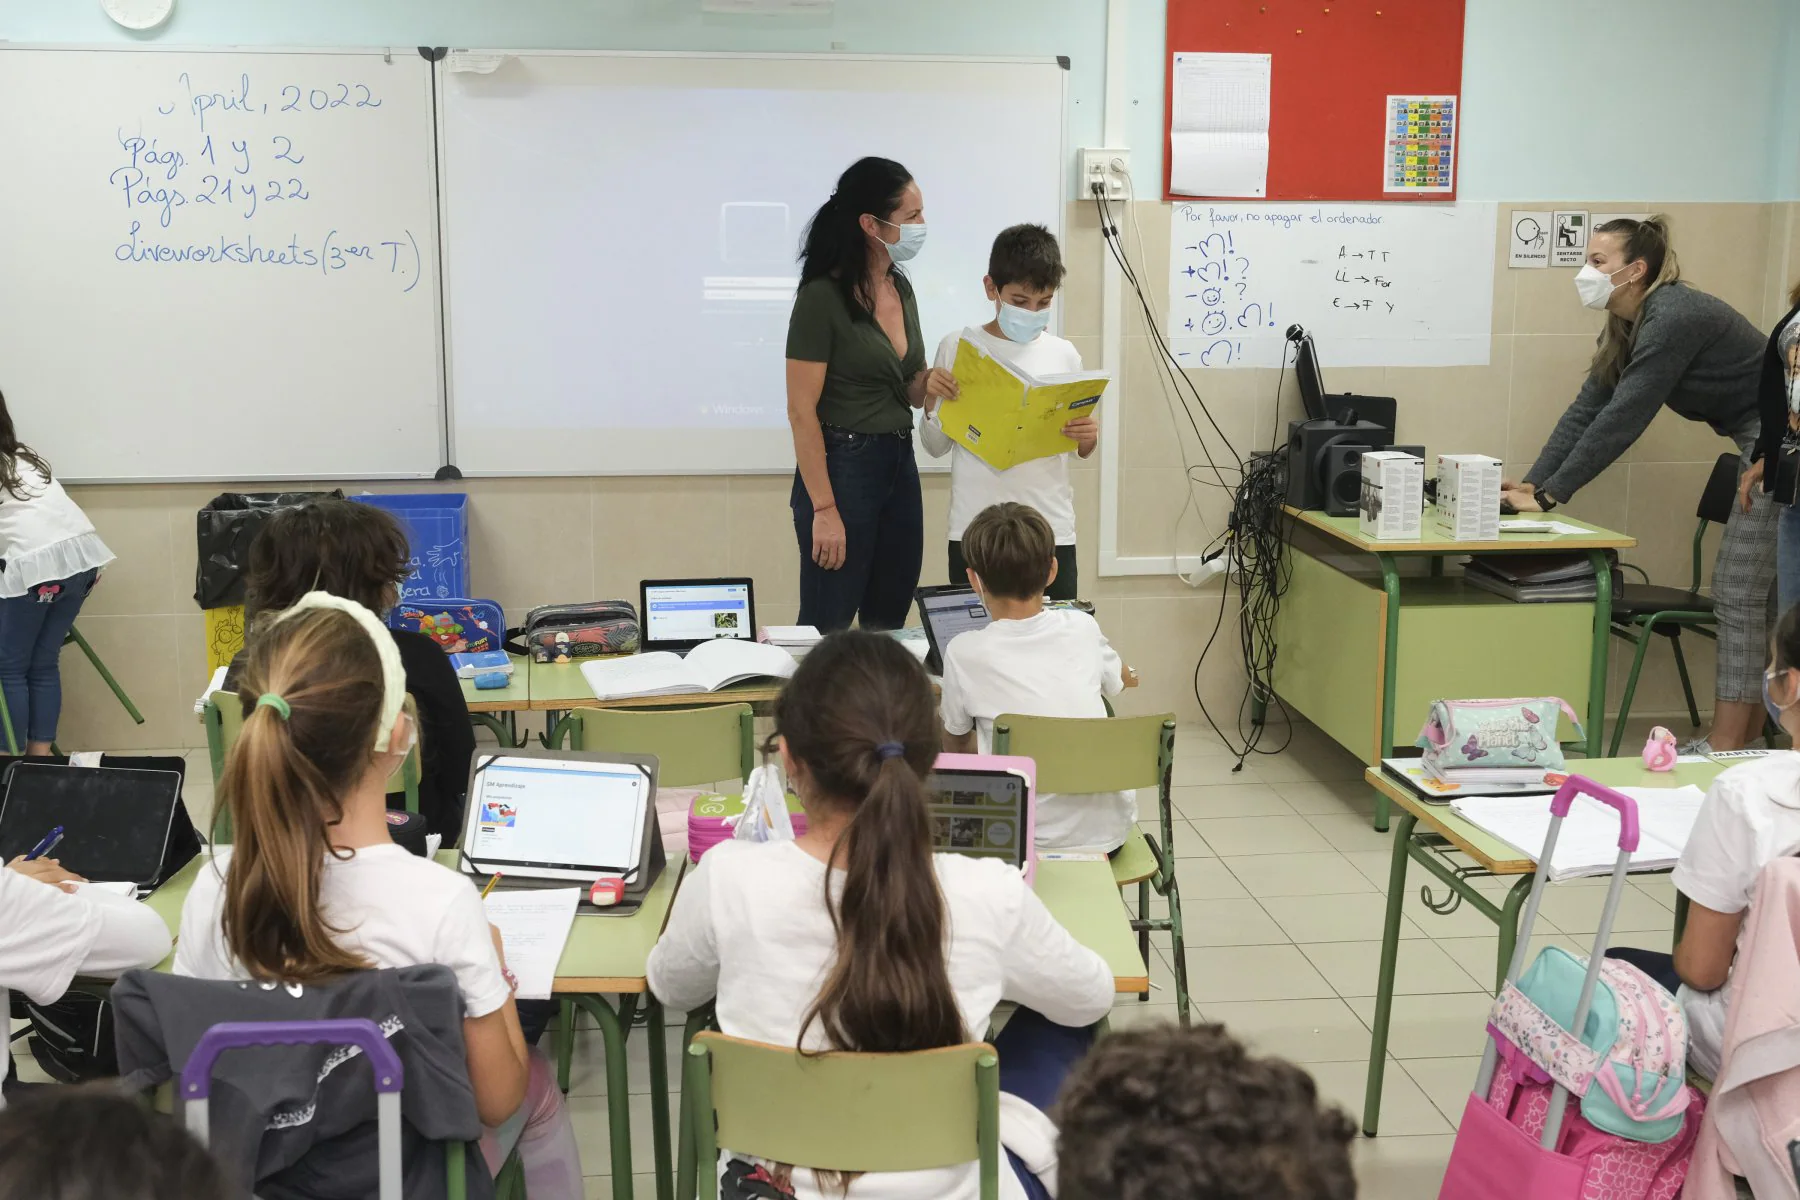 Foto de archivo de una clase en el colegio público El Tablero. / C7